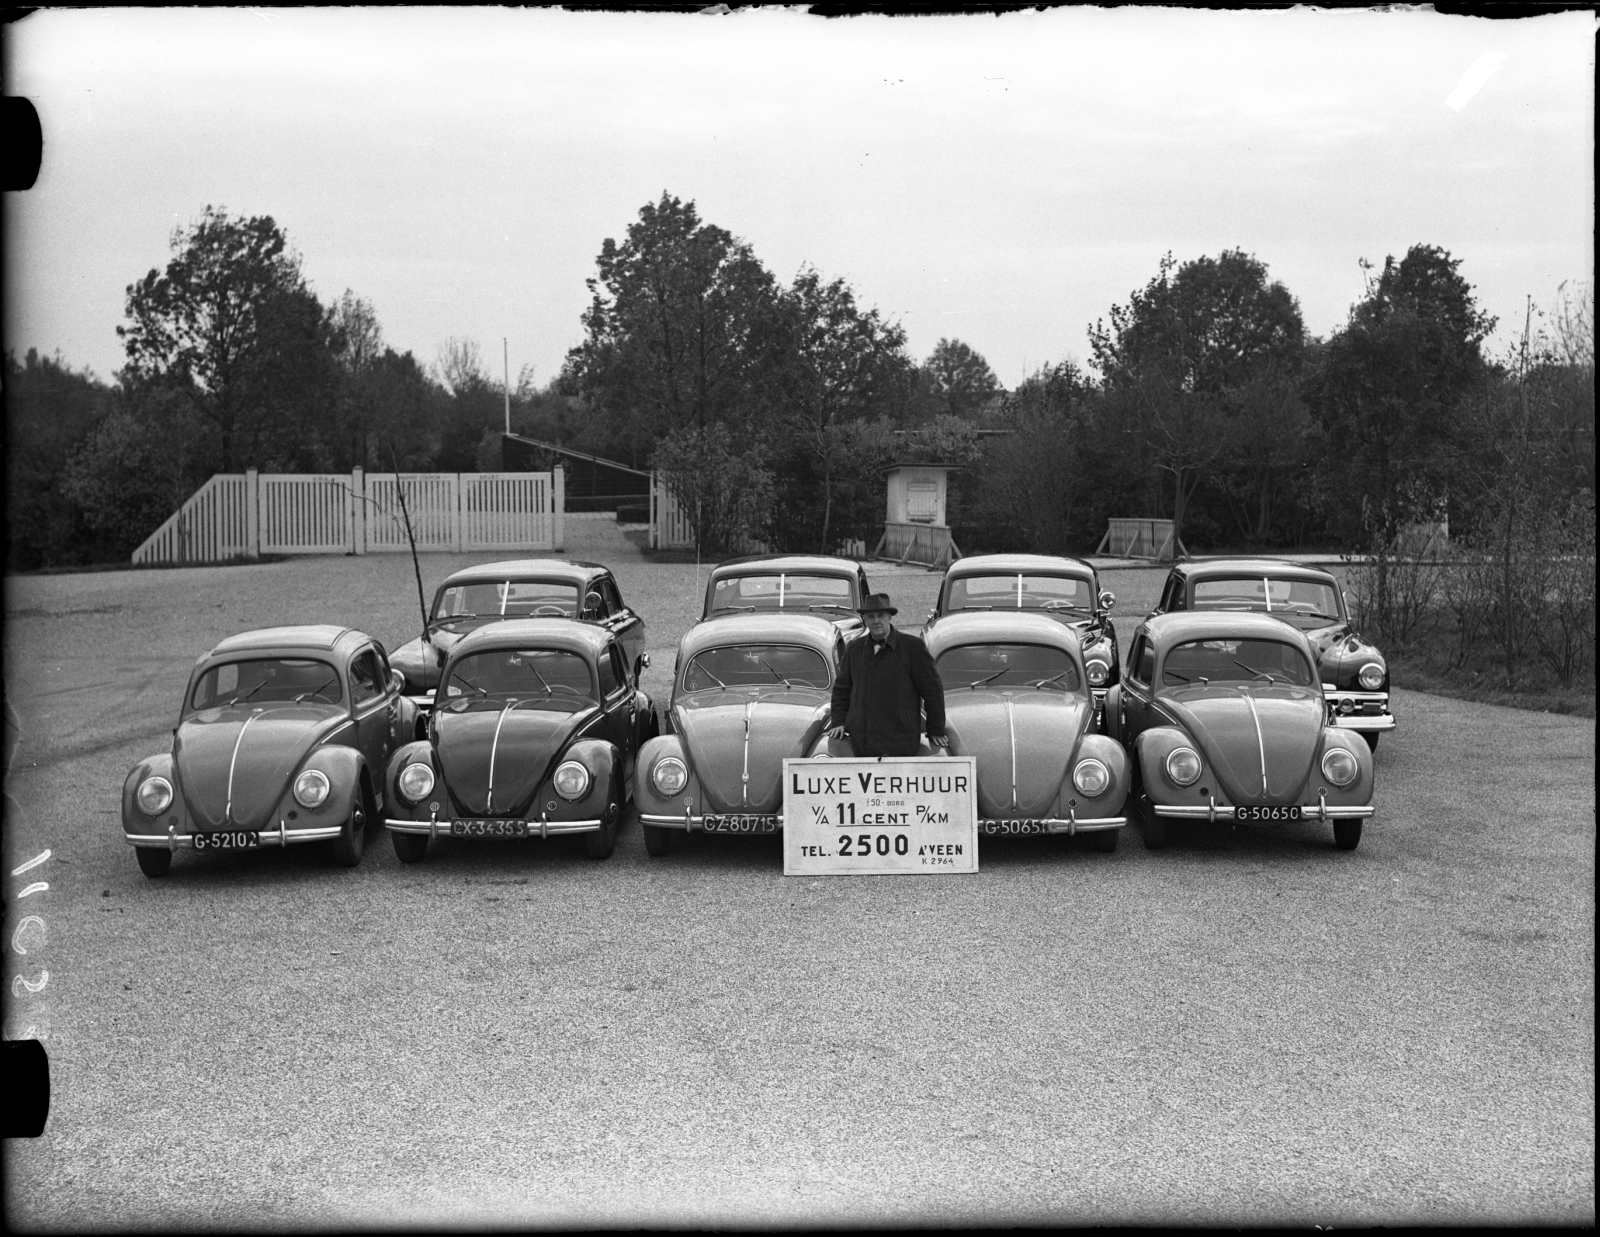 Rental VW Beetles in 1952